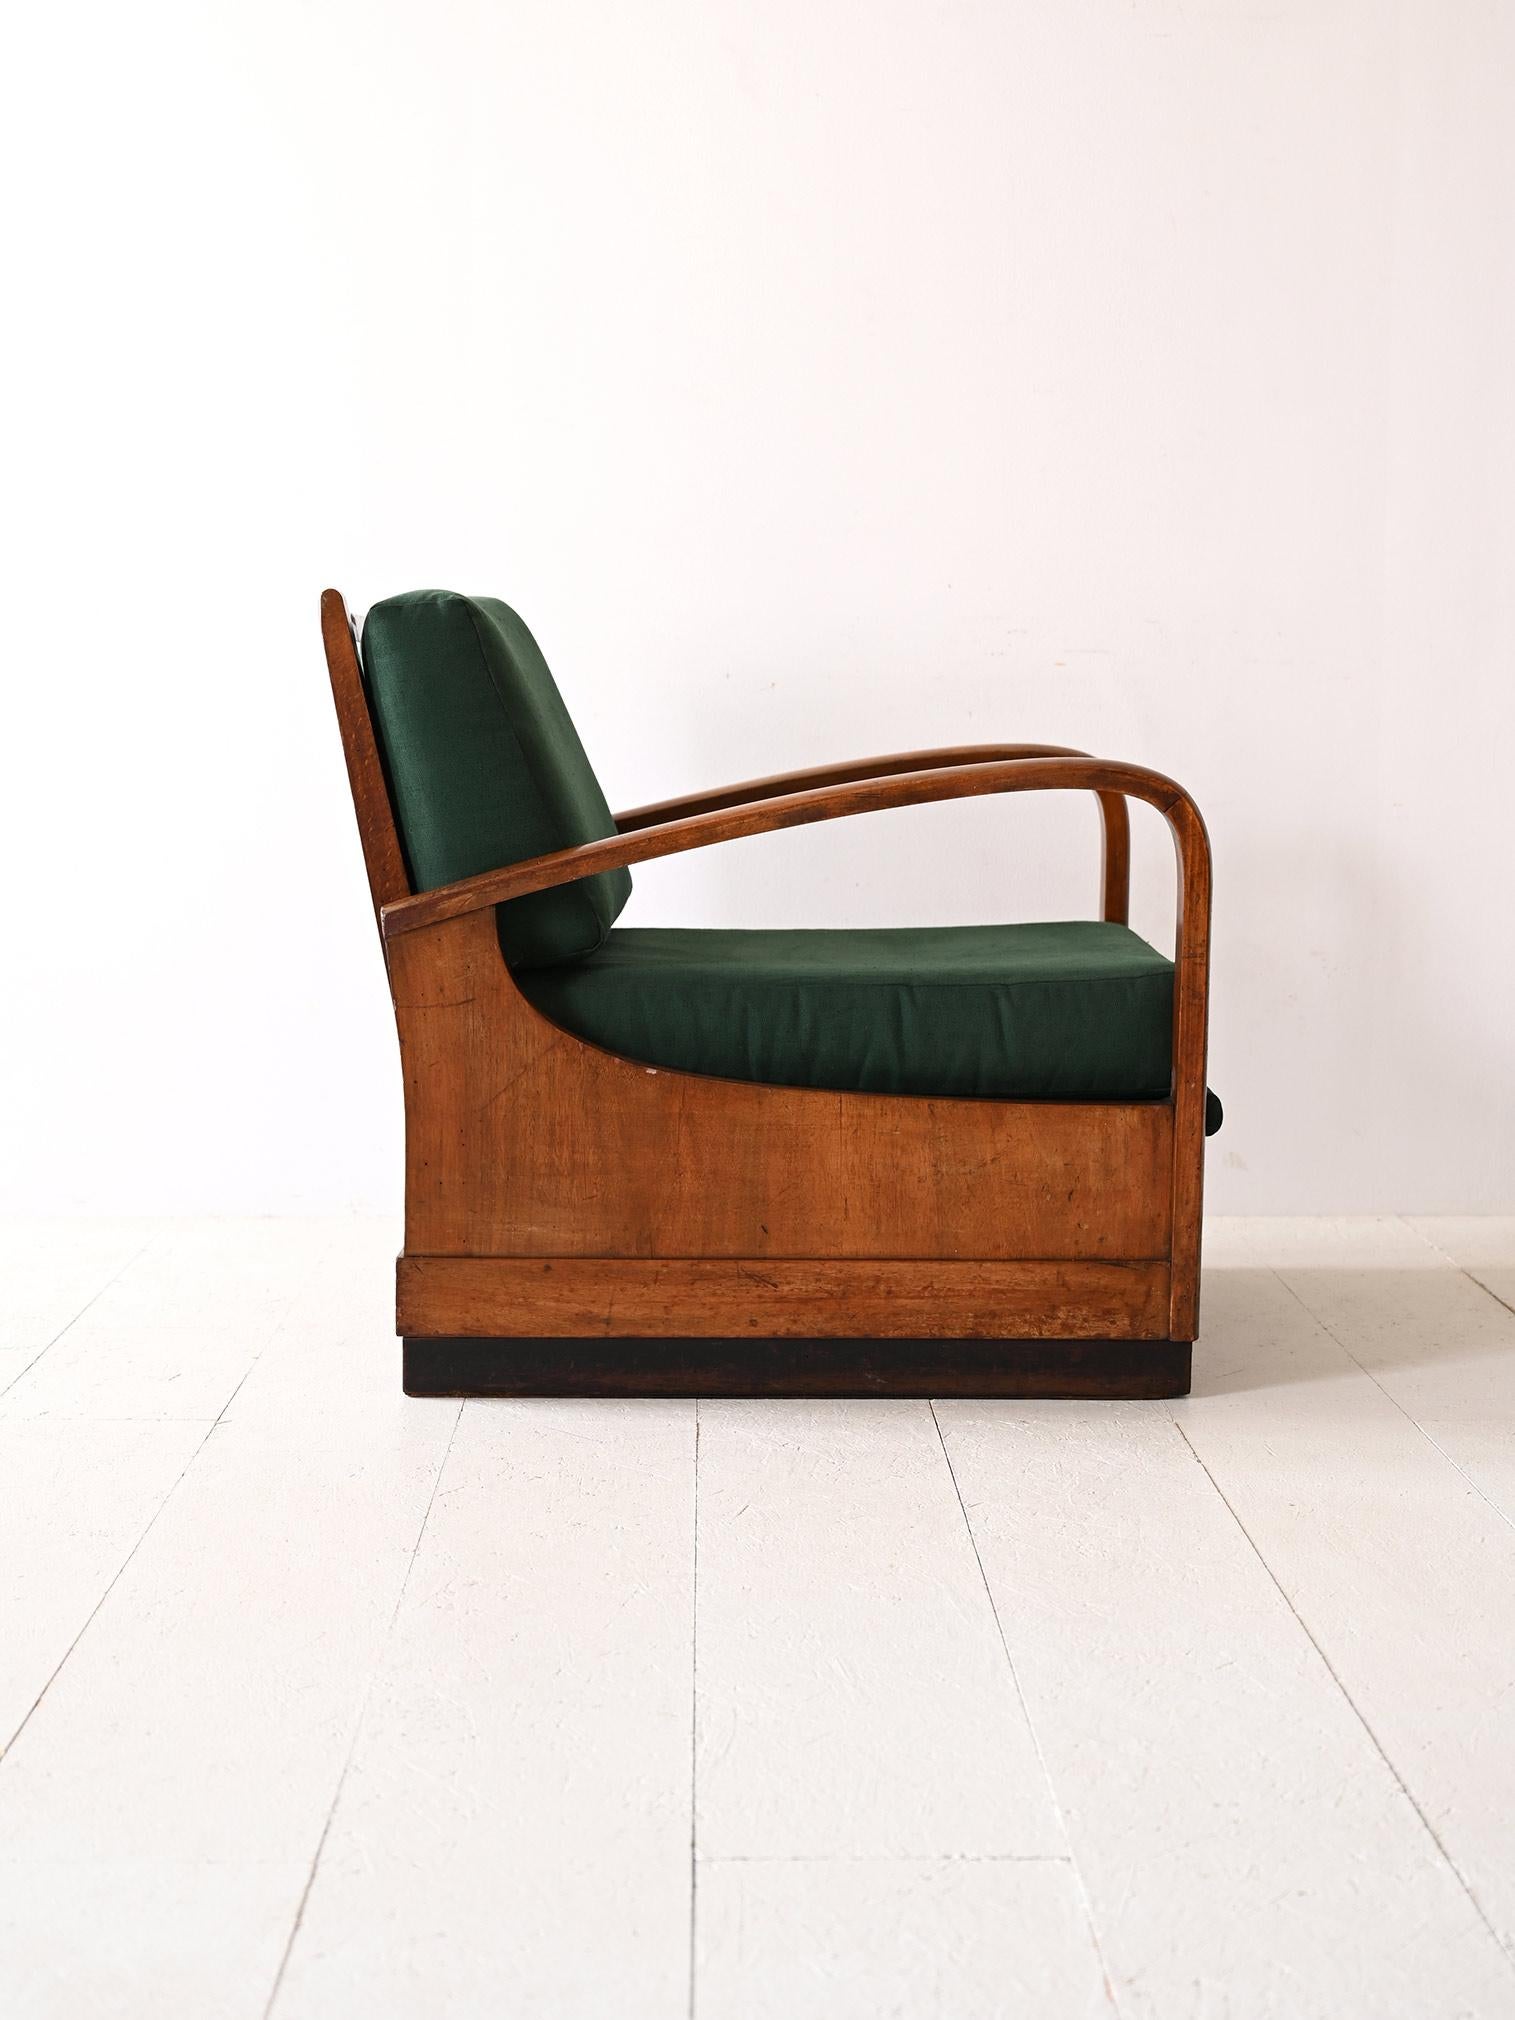 La poltrona Art Deco degli anni '40 incarna una doppia funzionalità: un confortevole sedile che si trasforma in letto. Il legno, con le sue linee curve e la finitura patinata, aggiunge un tocco di storicità, mentre il rivestimento verde è suggestivo